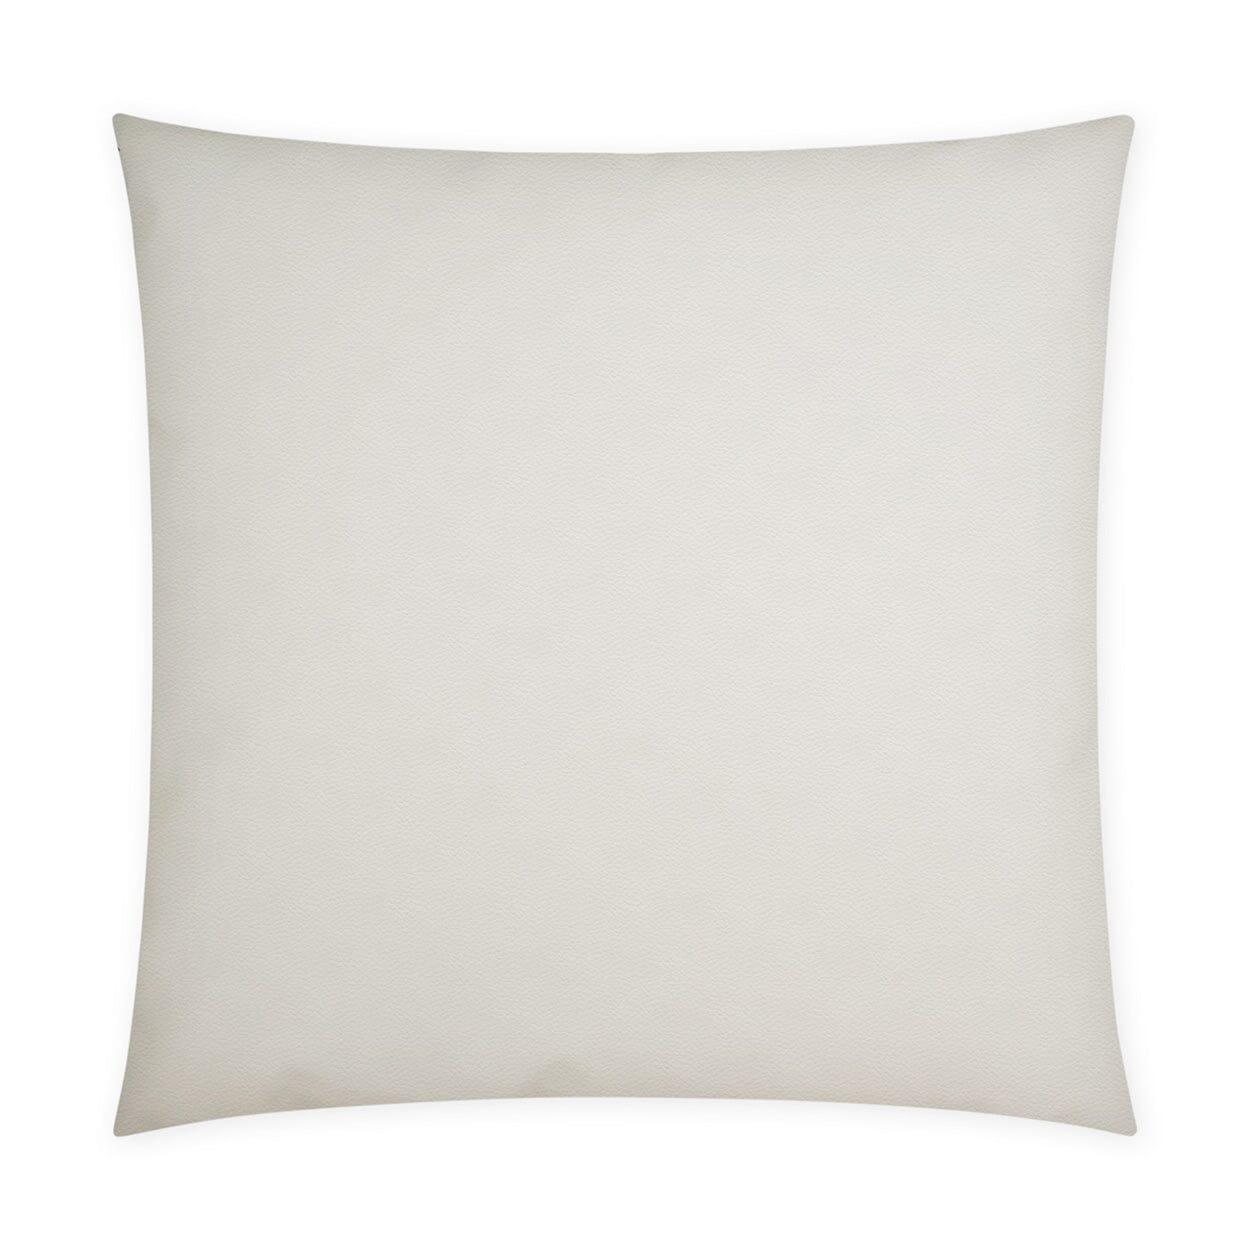 D.V. Kap 12" x 24" Outdoor Lumbar Pillow | Sundance Band Charcoal Lumbar Pillows D.V Kap Outdoor